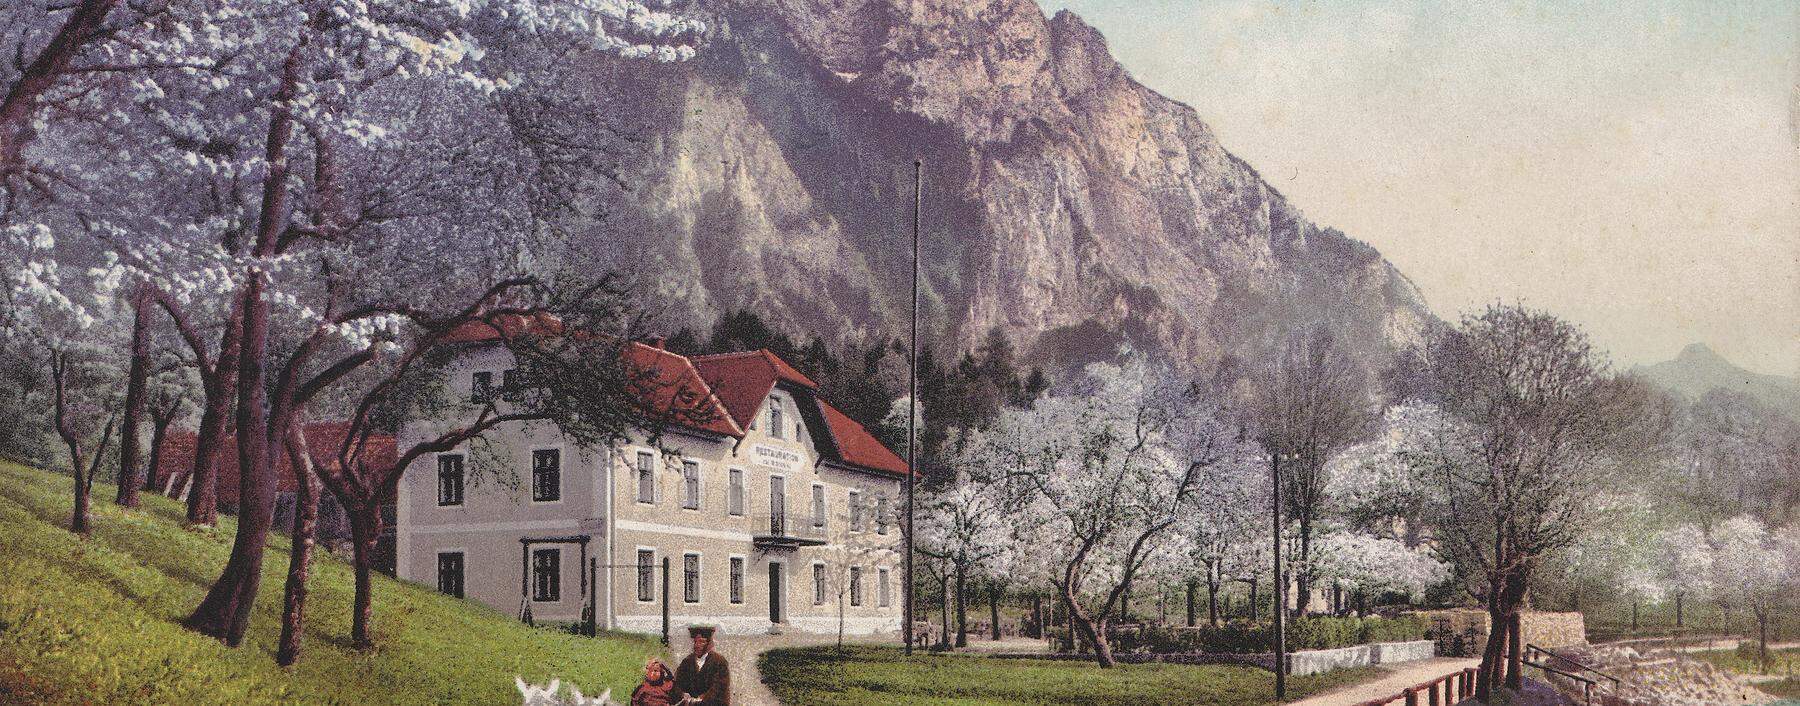 <strong>Beliebtes Ausflugsziel: </strong>Gasthof zur kleinen Ramsau, Ansichtskarte, ca. 1910.